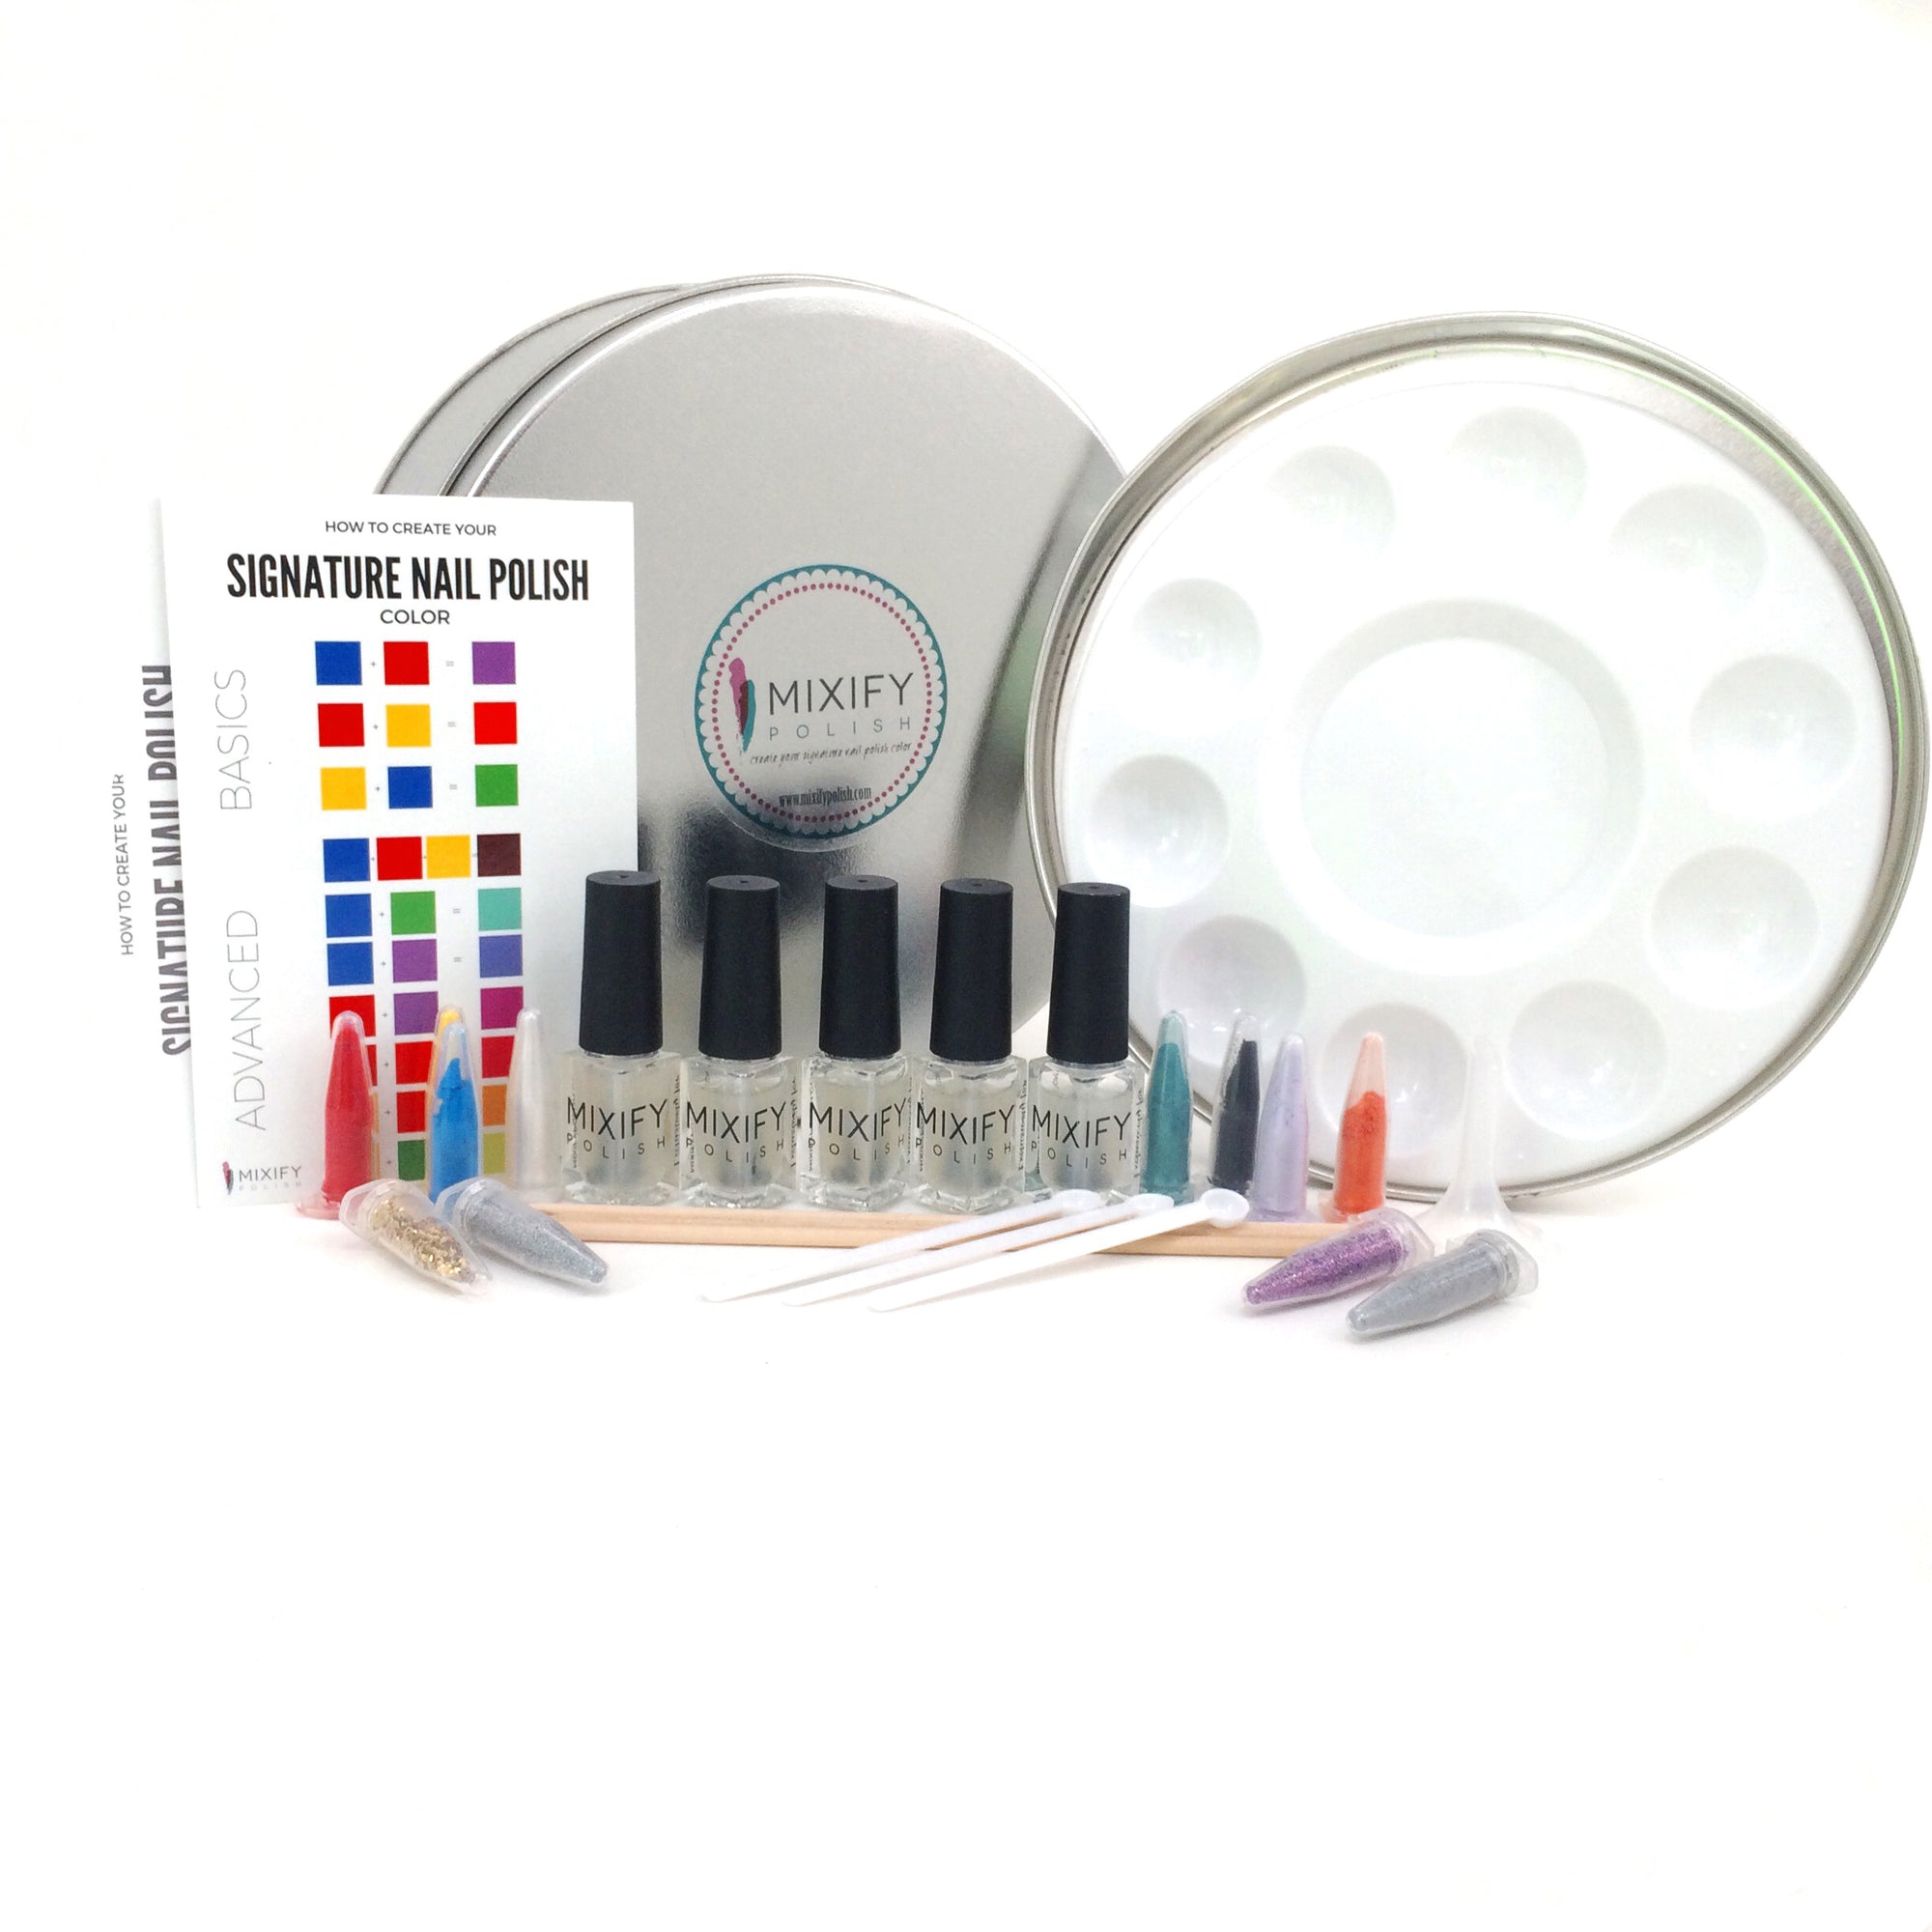 Este kit te permite crear tus propios esmaltes de uñas